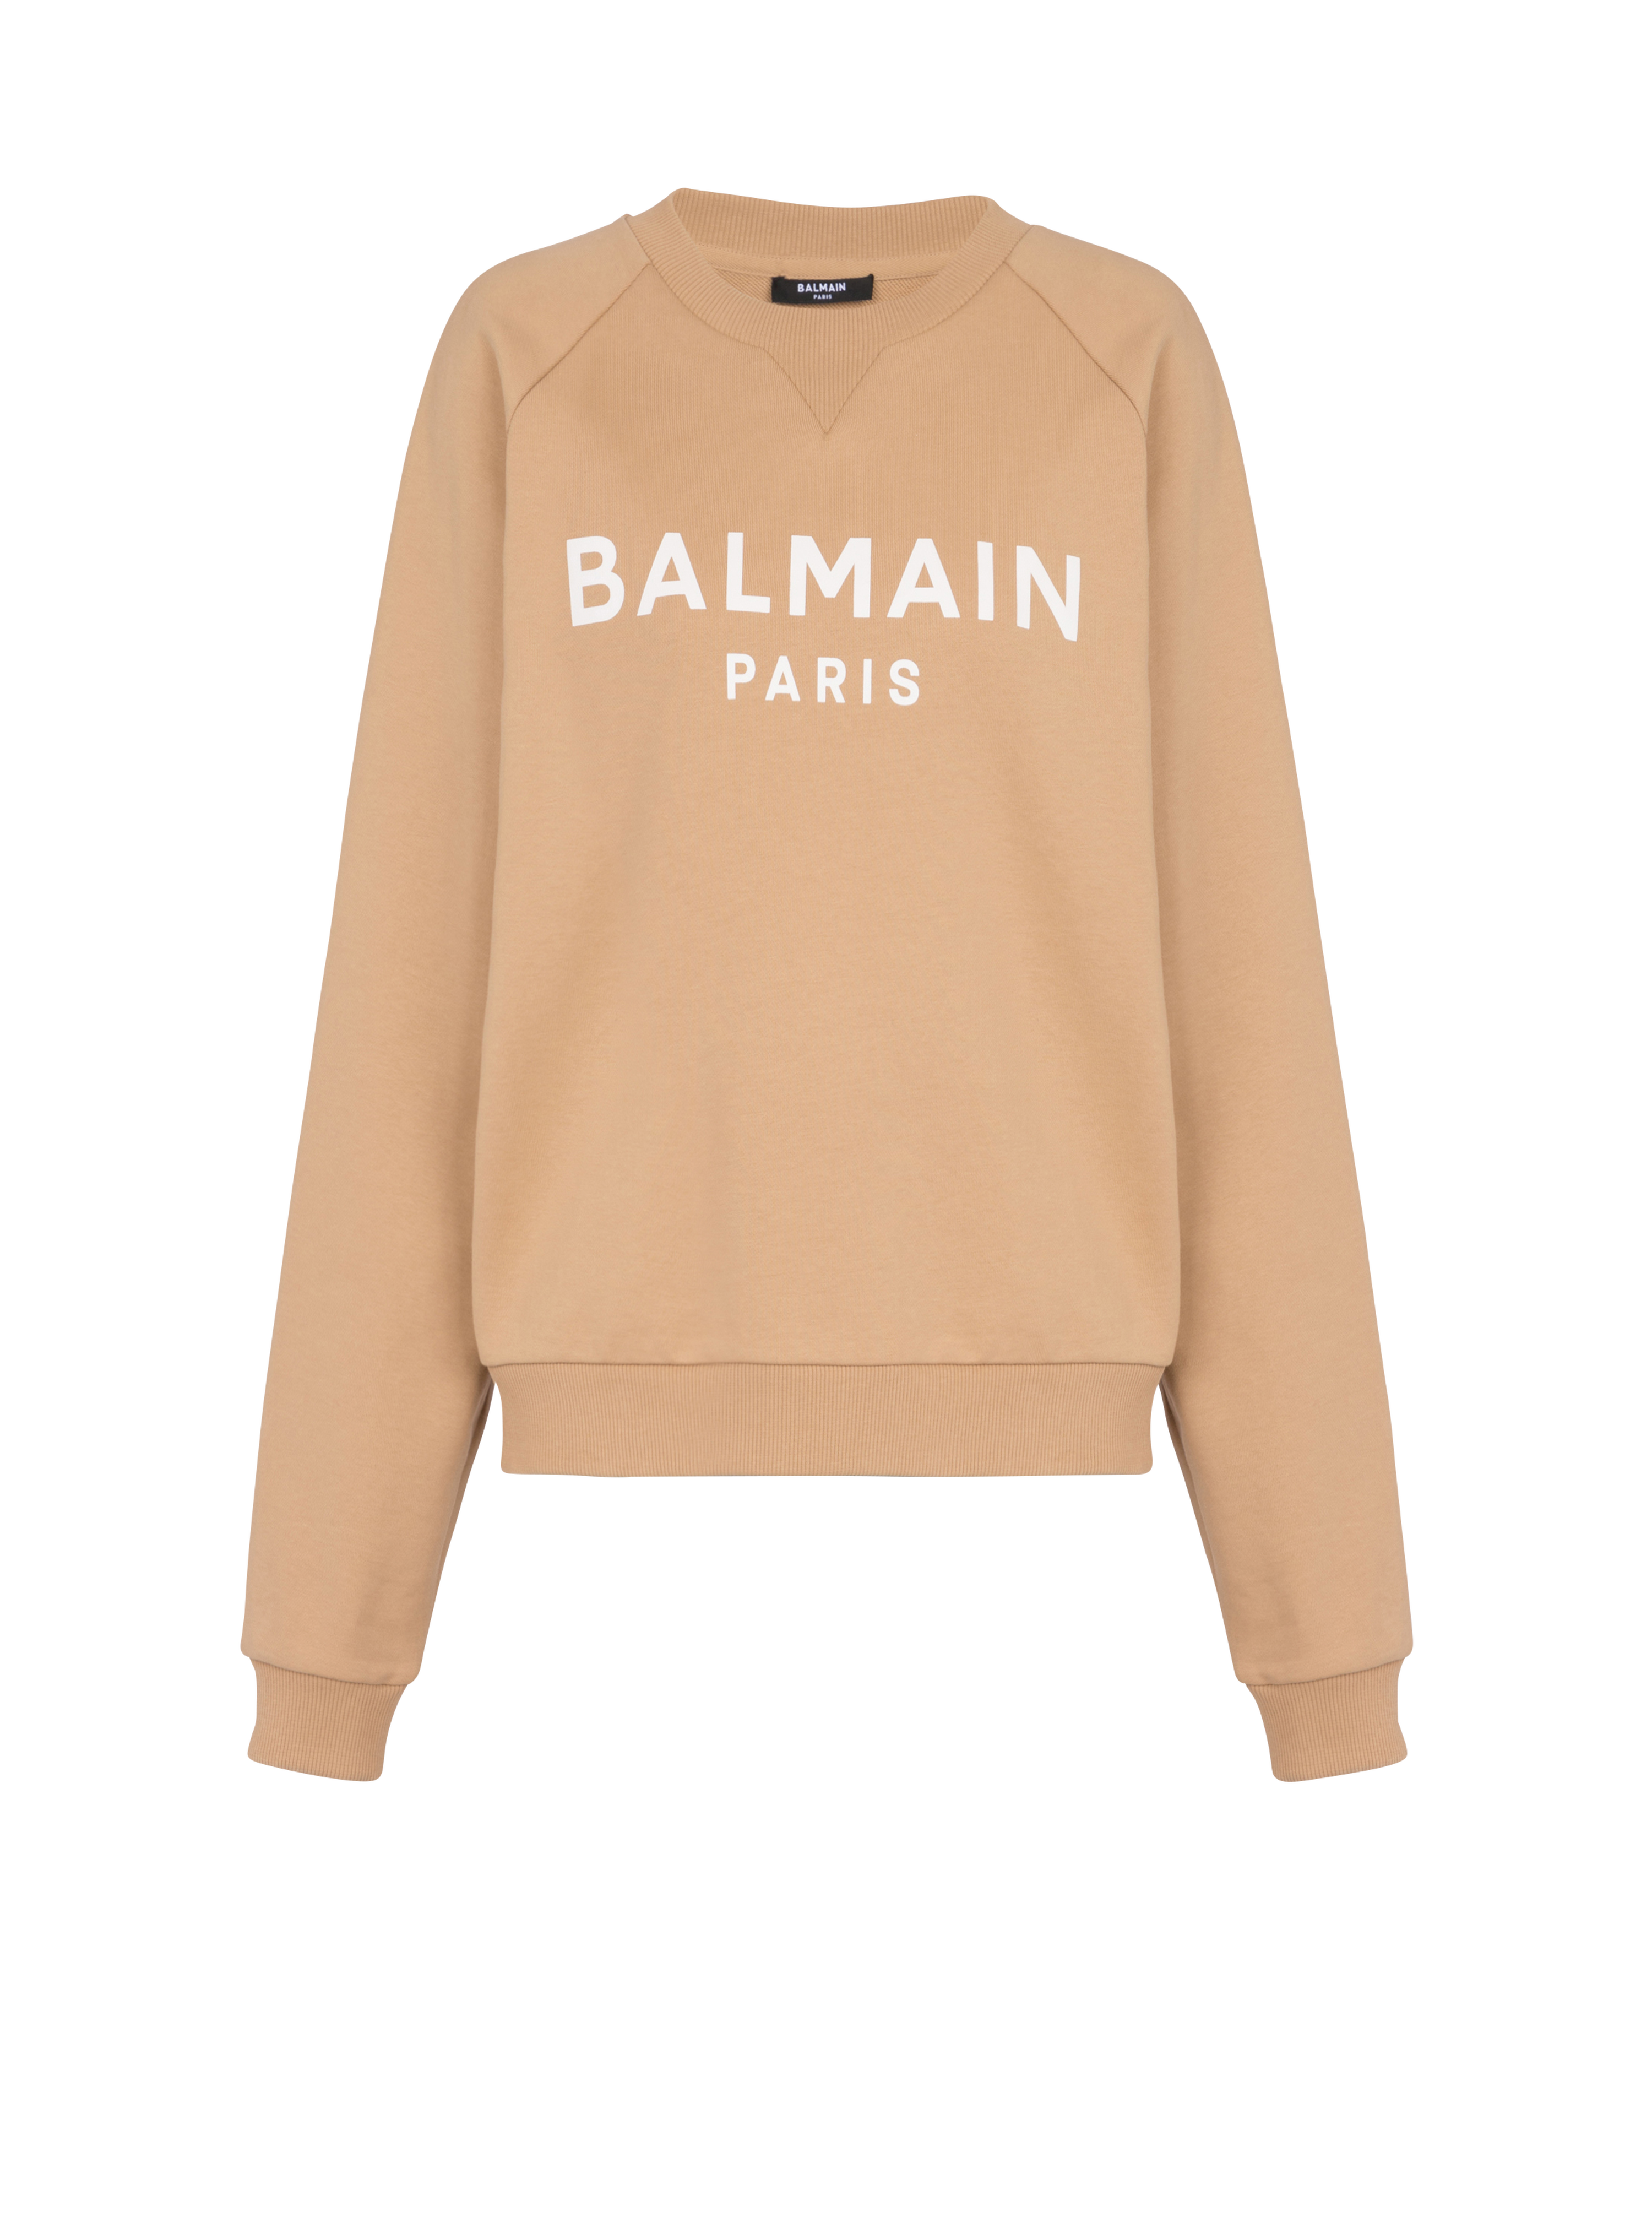 Cotton printed Balmain logo sweatshirt, brown